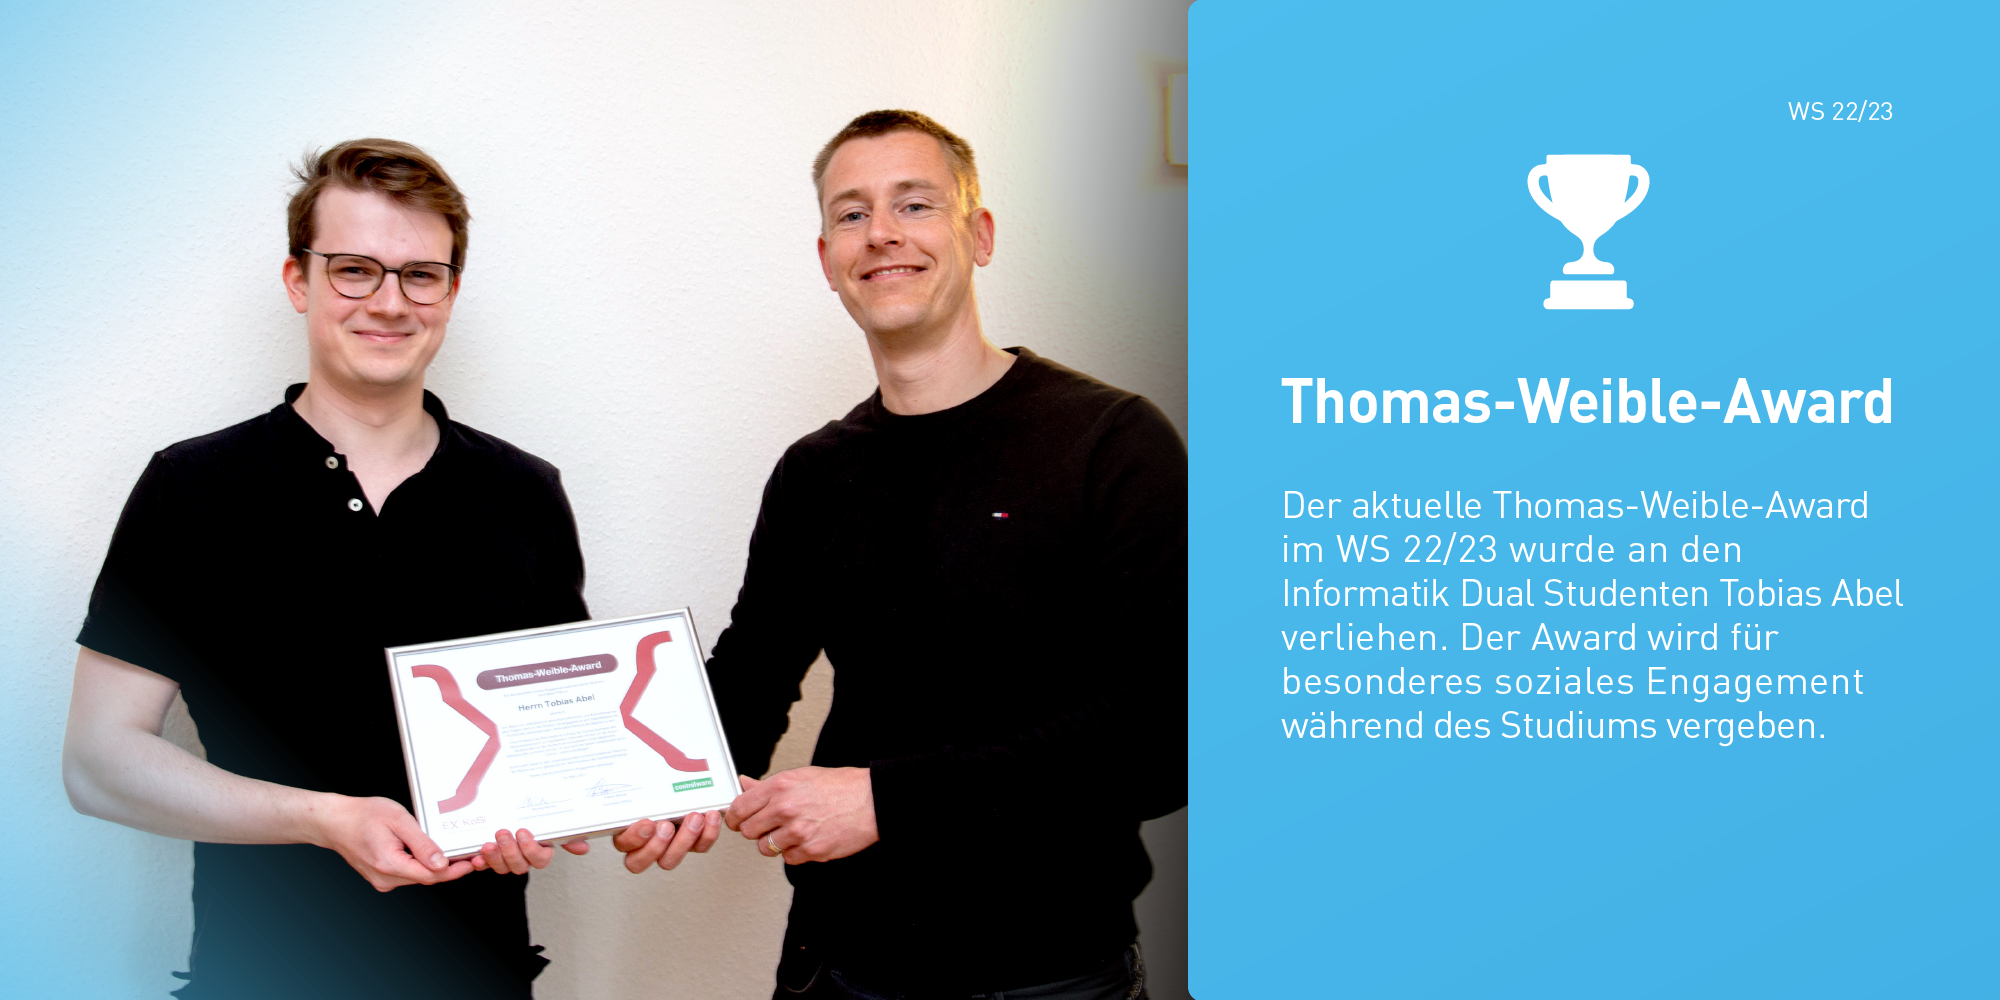 Thomas-Weible-Award